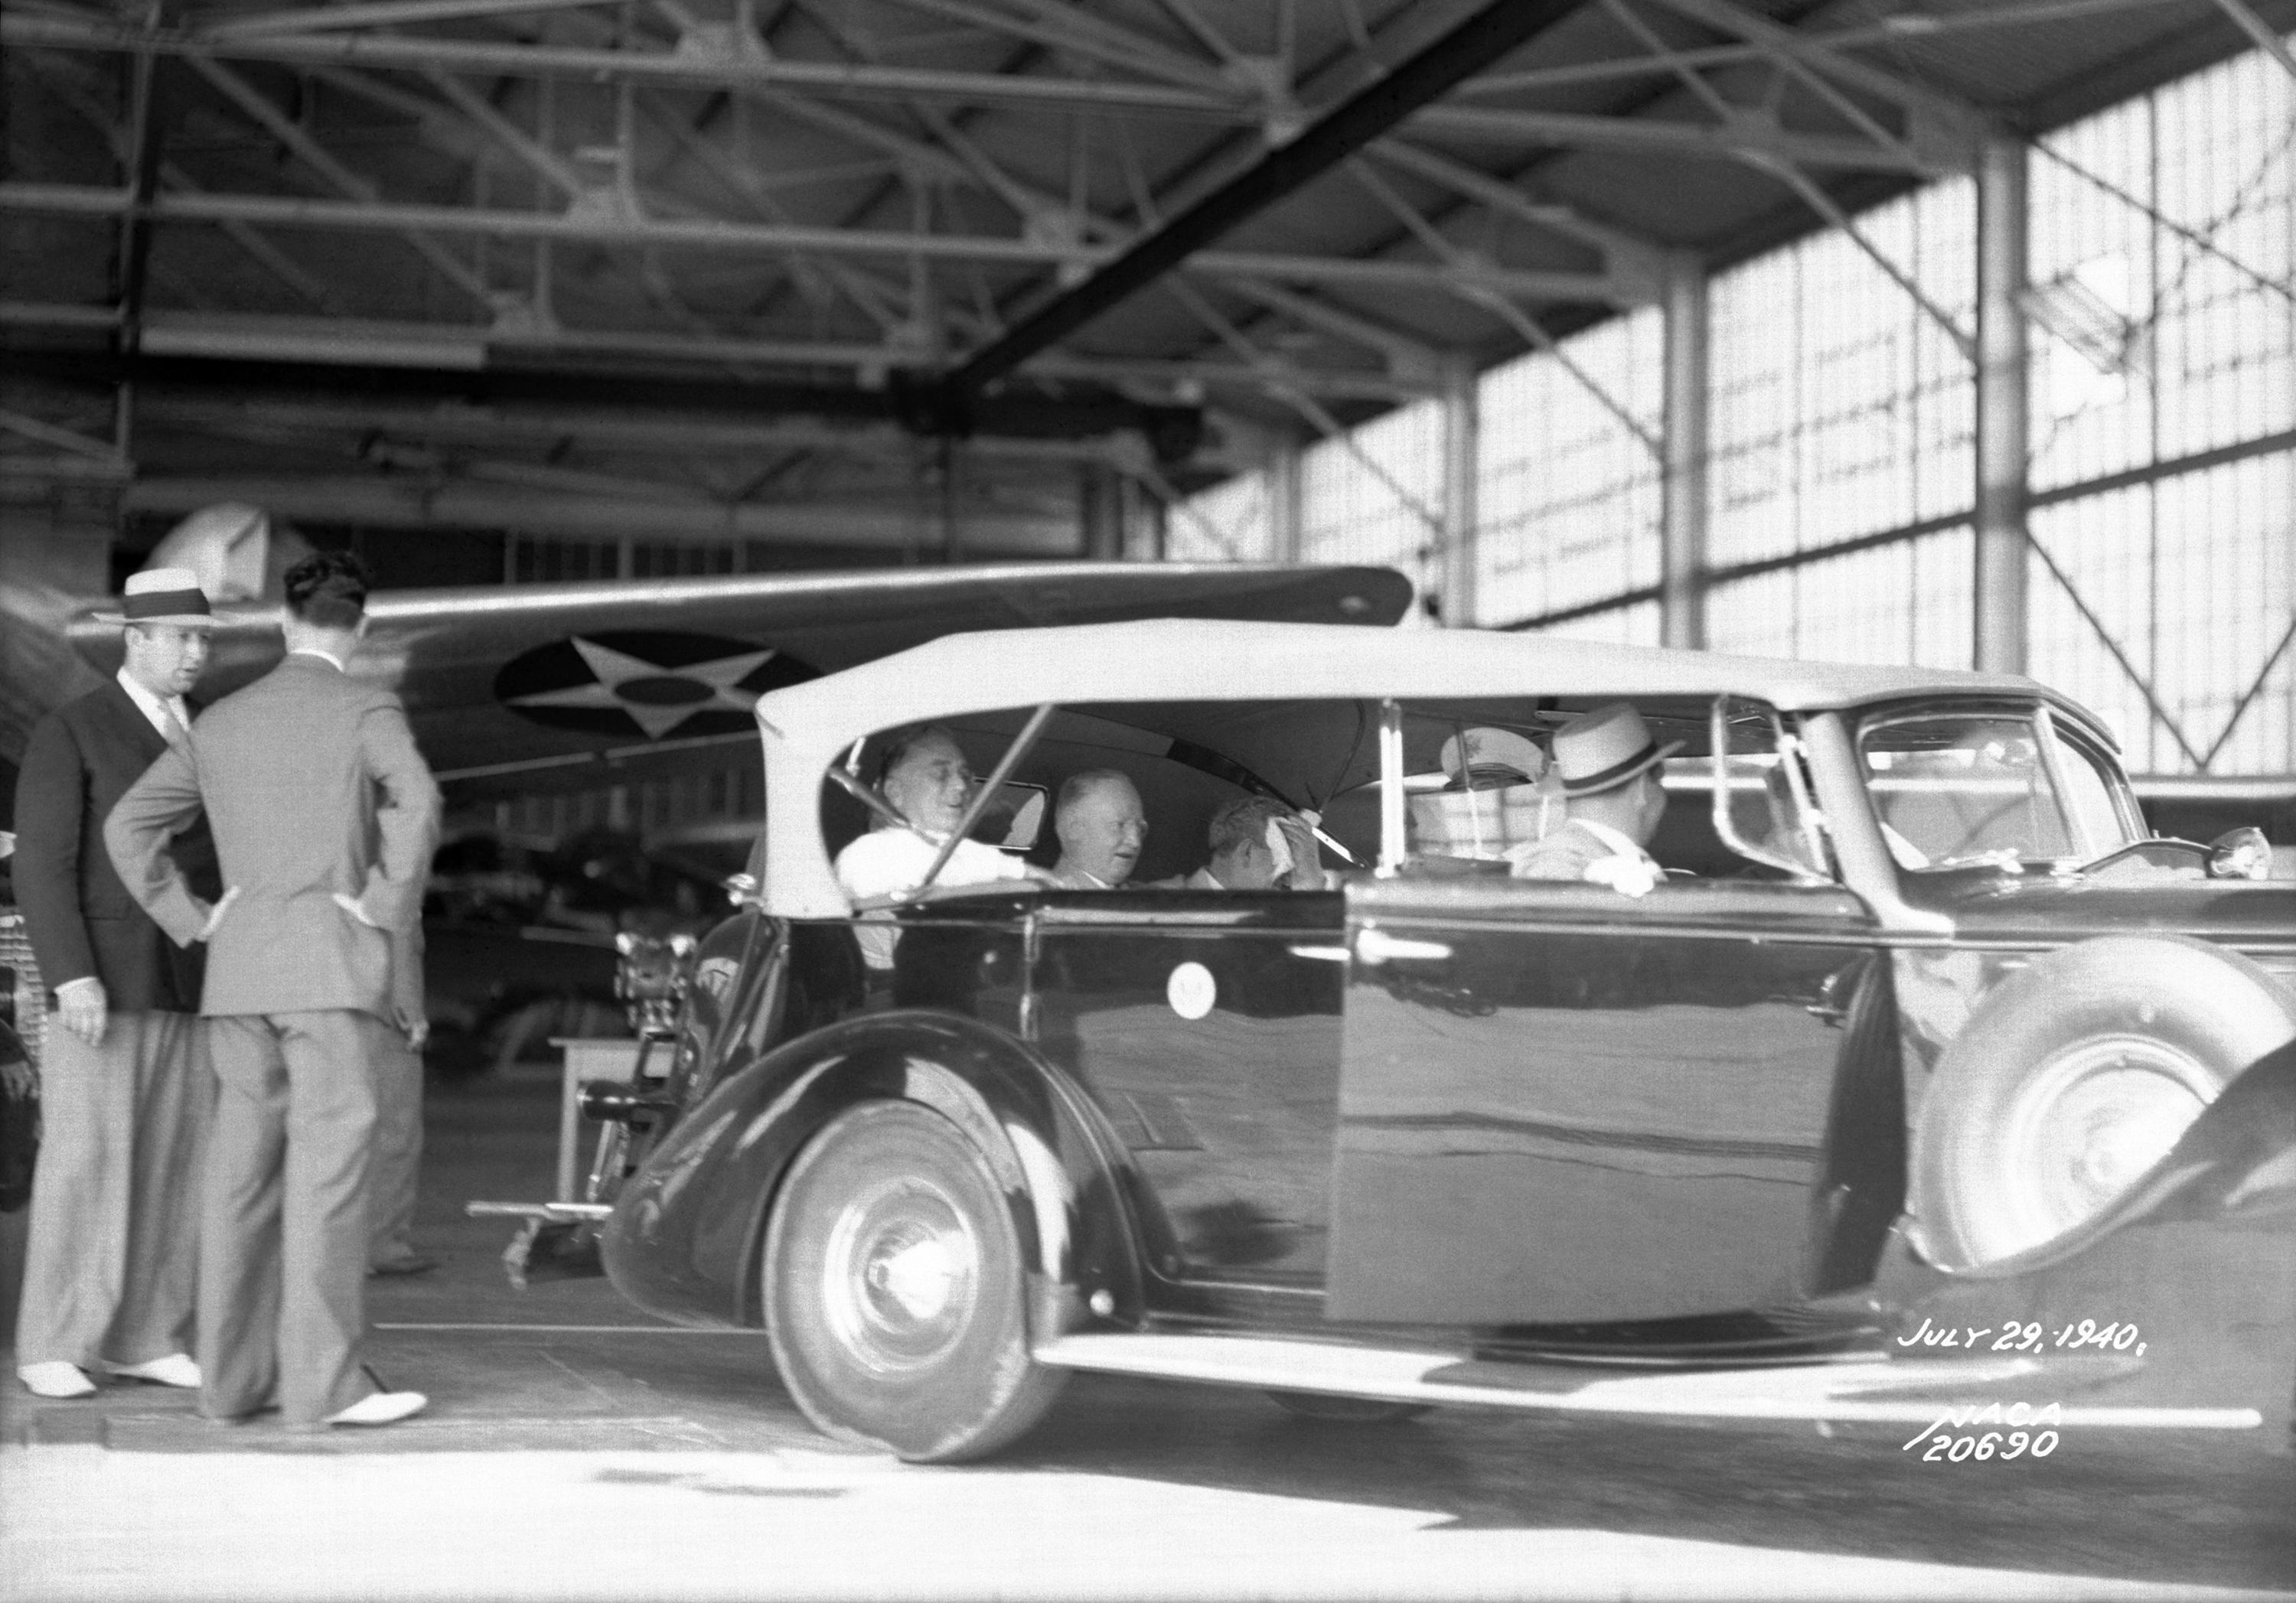 President Franklin D. Roosevelt, seen inside the car at far left, visits a hangar on July 29, 1940.